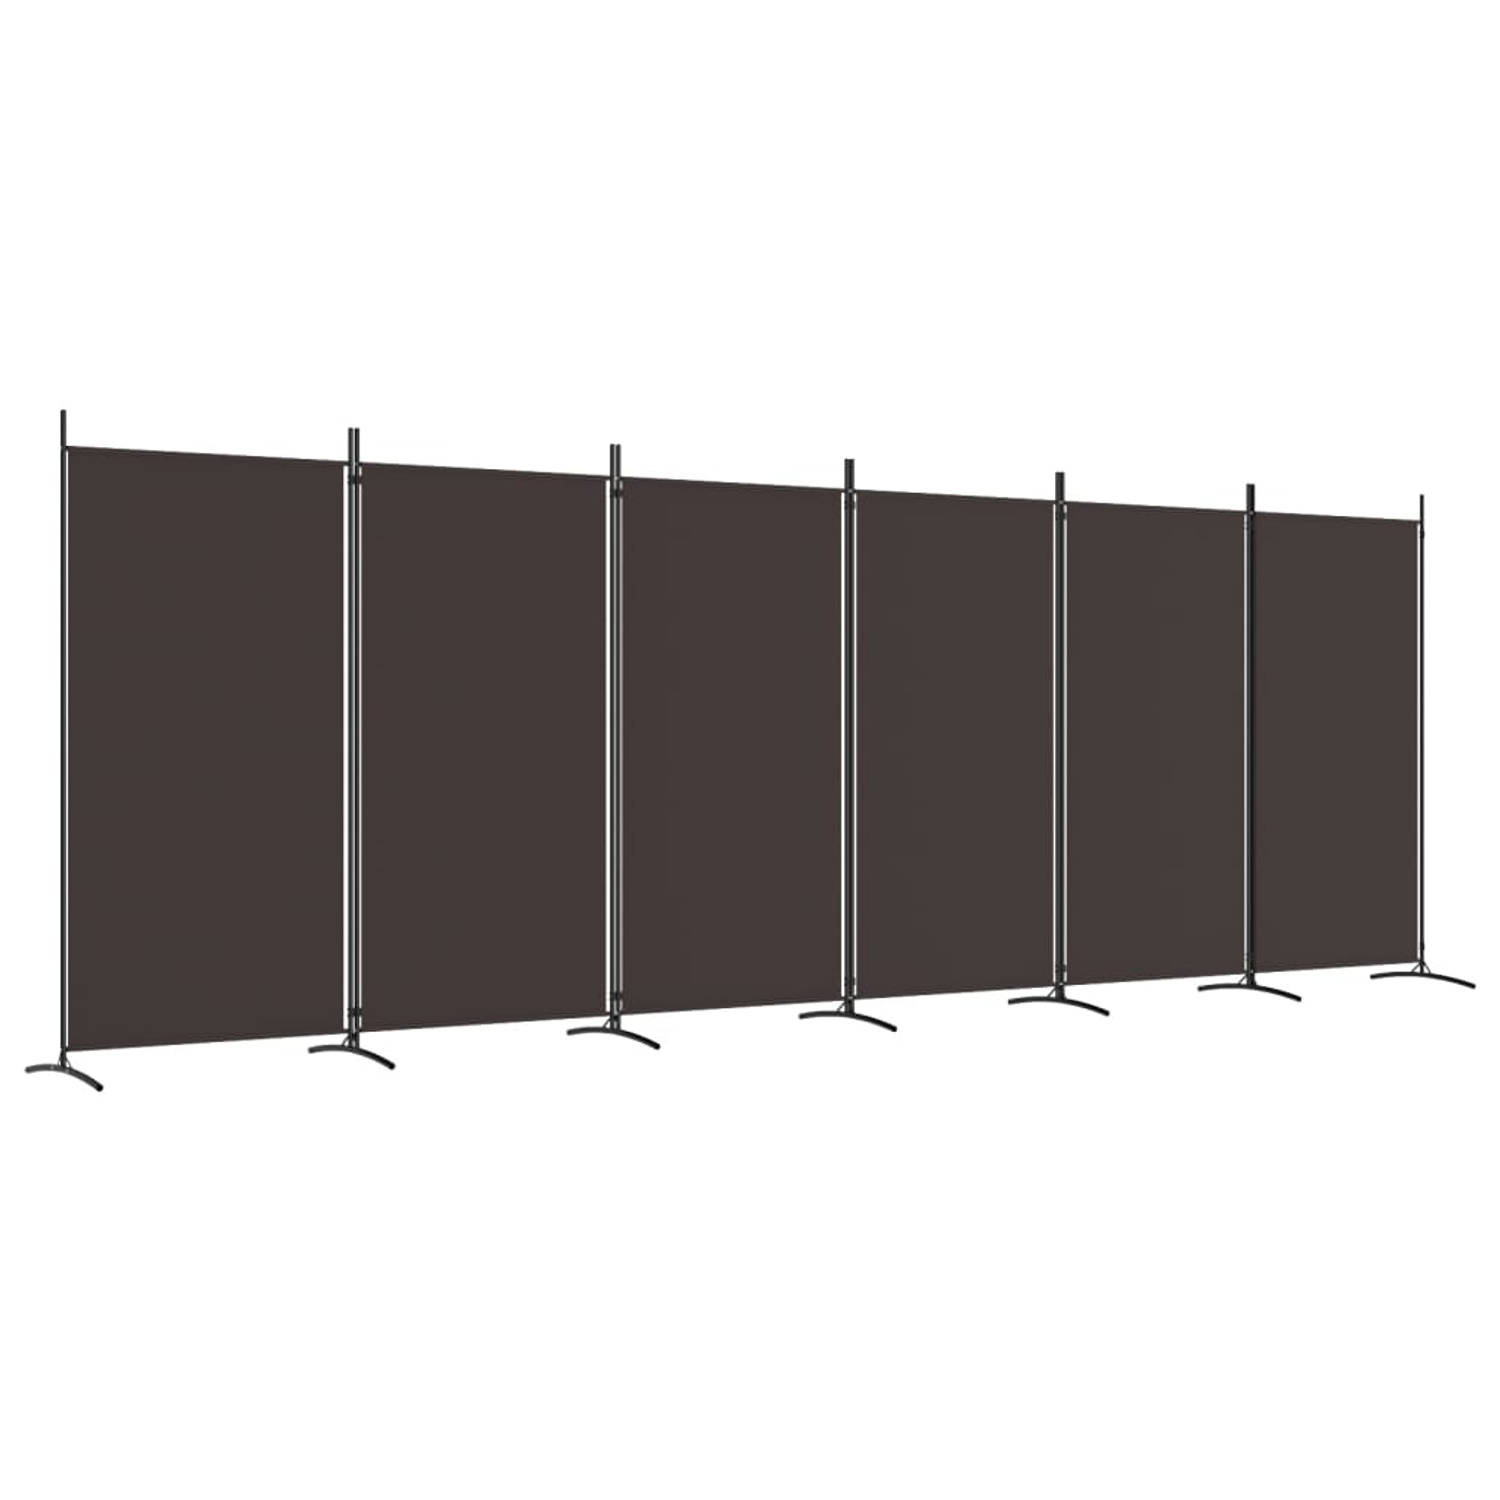 The Living Store Kamerscherm Bruin 6 Panelen - 520 x 180 cm - Duurzaam Materiaal